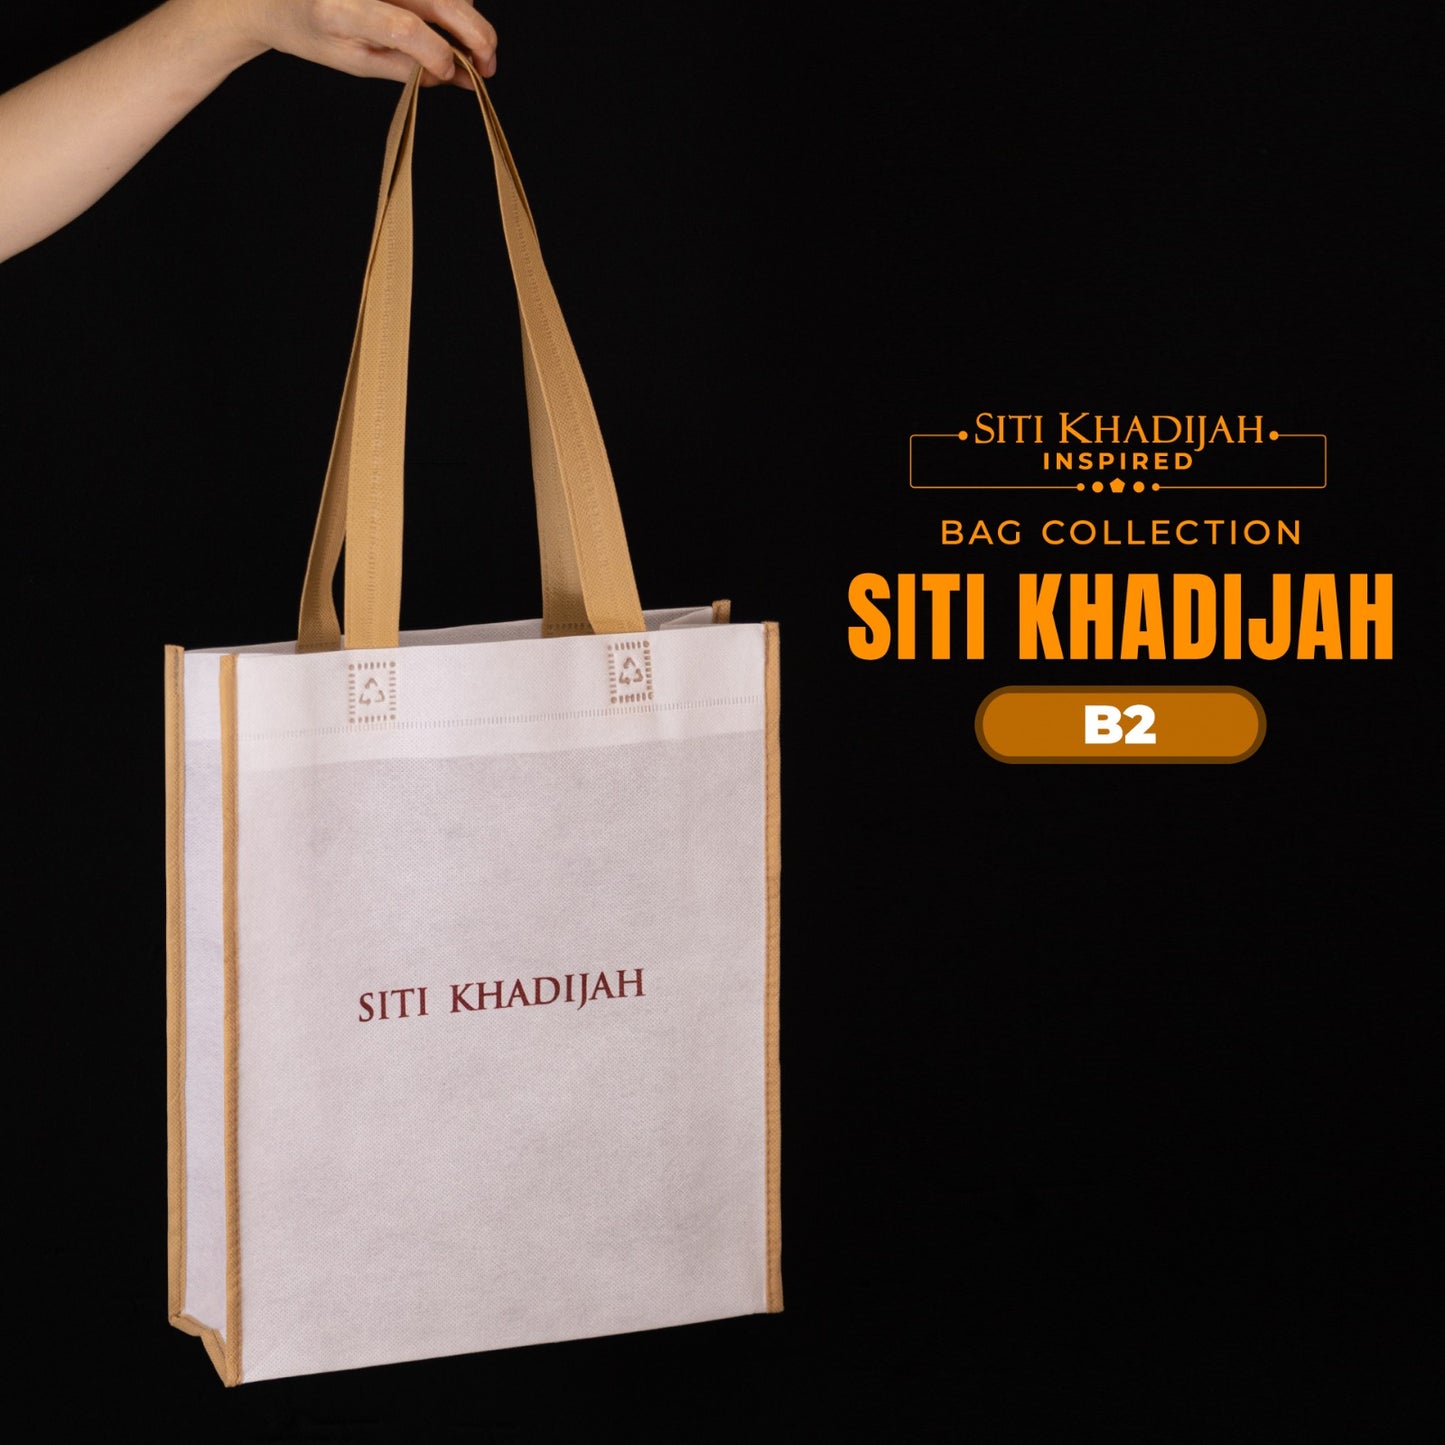 Telekung Siti Khadijah Inspired Modish Ambar Collection - Free Woven Bag